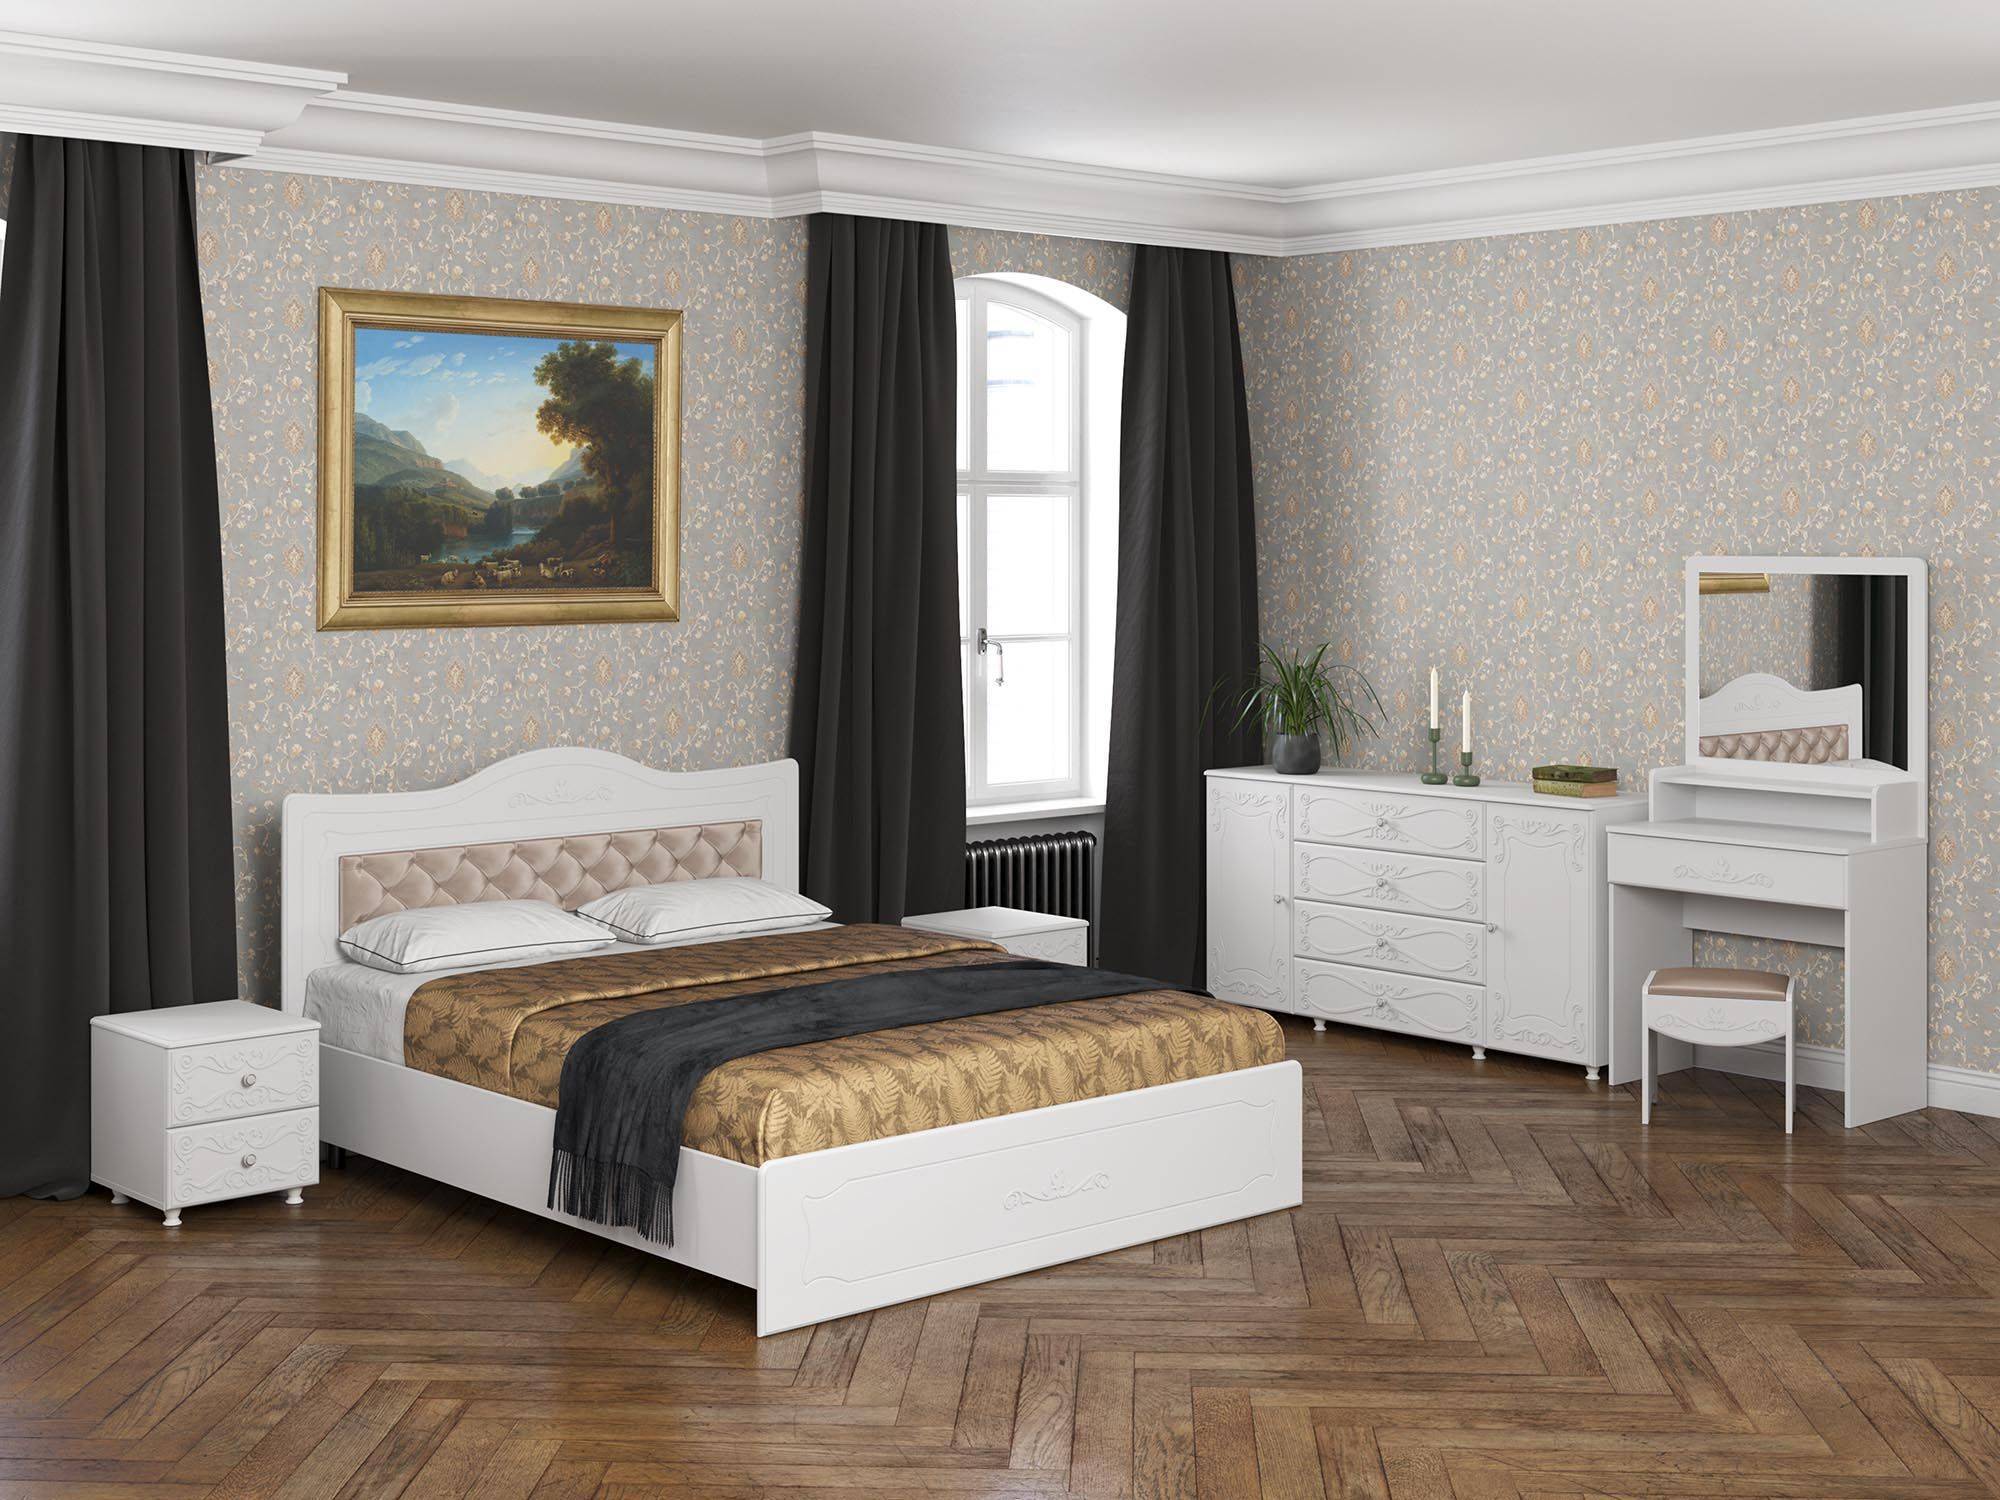 Спальня Италия-5 мягкая спинка белое дерево Белое дерево, Белый, МДФ, ЛДСП италия спальня мягкая спинка 2м